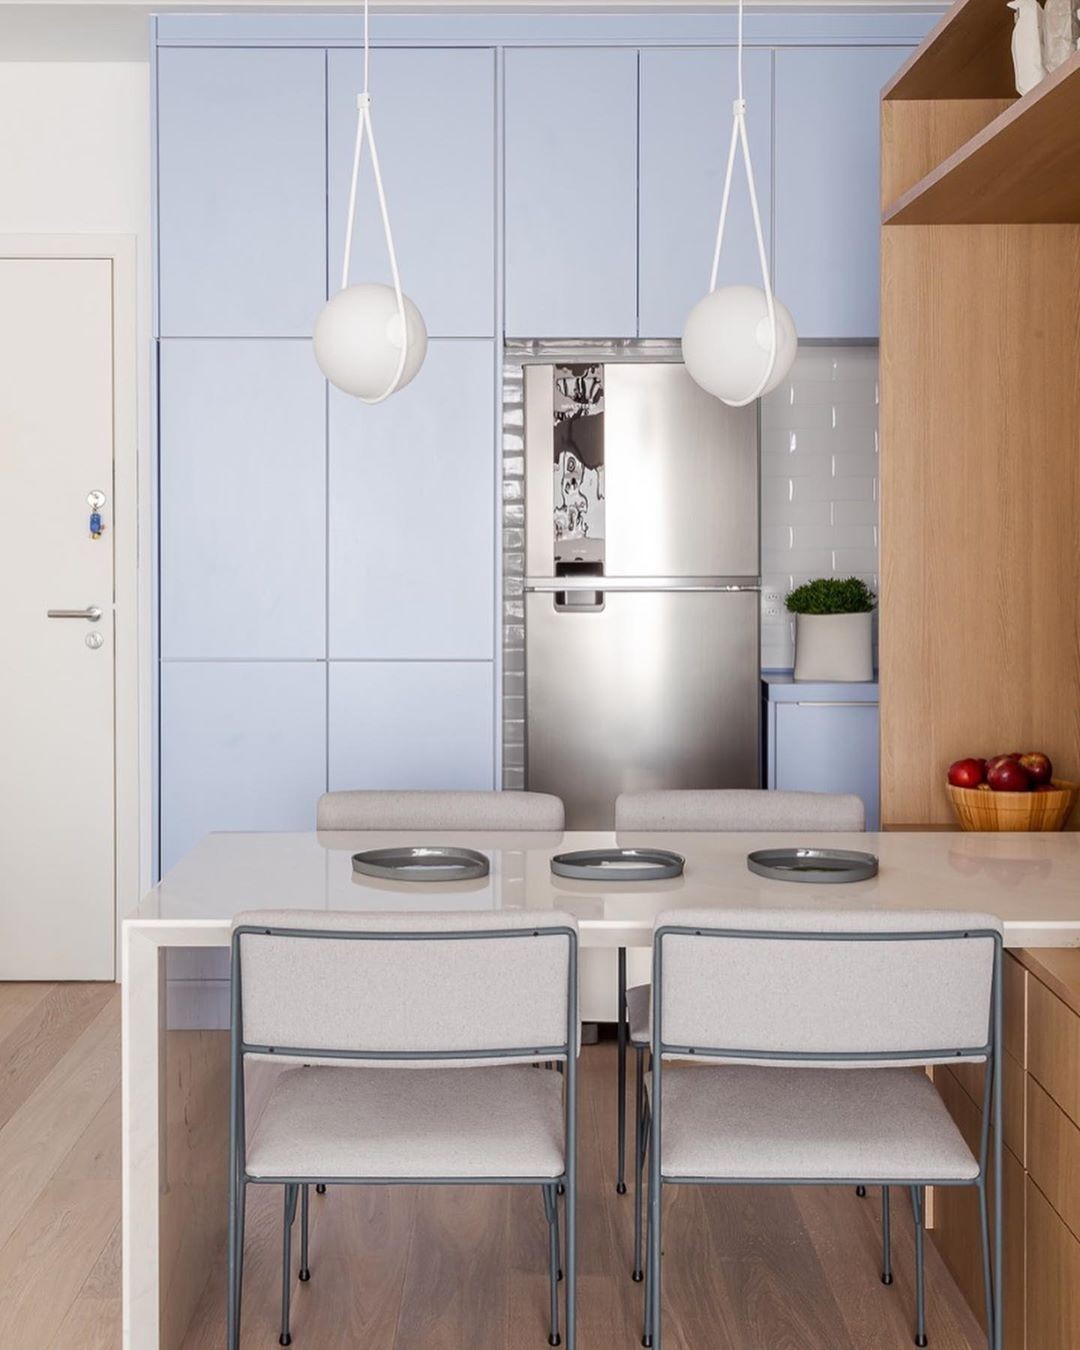 Cozinha aberta: 25 ambientes integrados e cheios de boas ideias (Foto: divulgação)